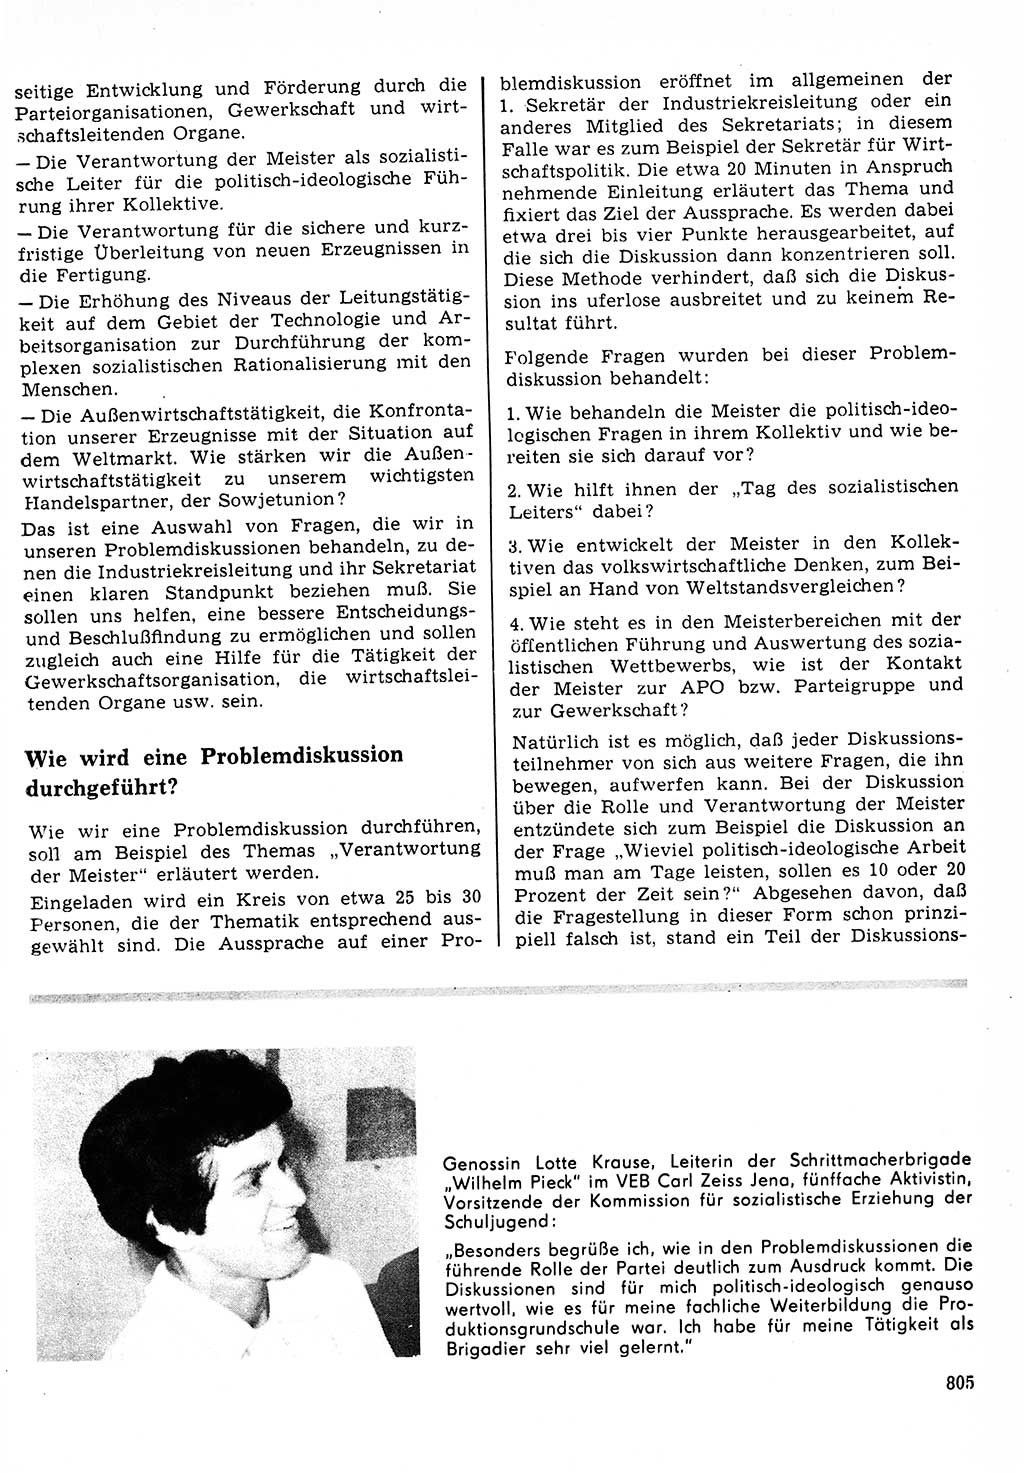 Neuer Weg (NW), Organ des Zentralkomitees (ZK) der SED (Sozialistische Einheitspartei Deutschlands) für Fragen des Parteilebens, 23. Jahrgang [Deutsche Demokratische Republik (DDR)] 1968, Seite 789 (NW ZK SED DDR 1968, S. 789)